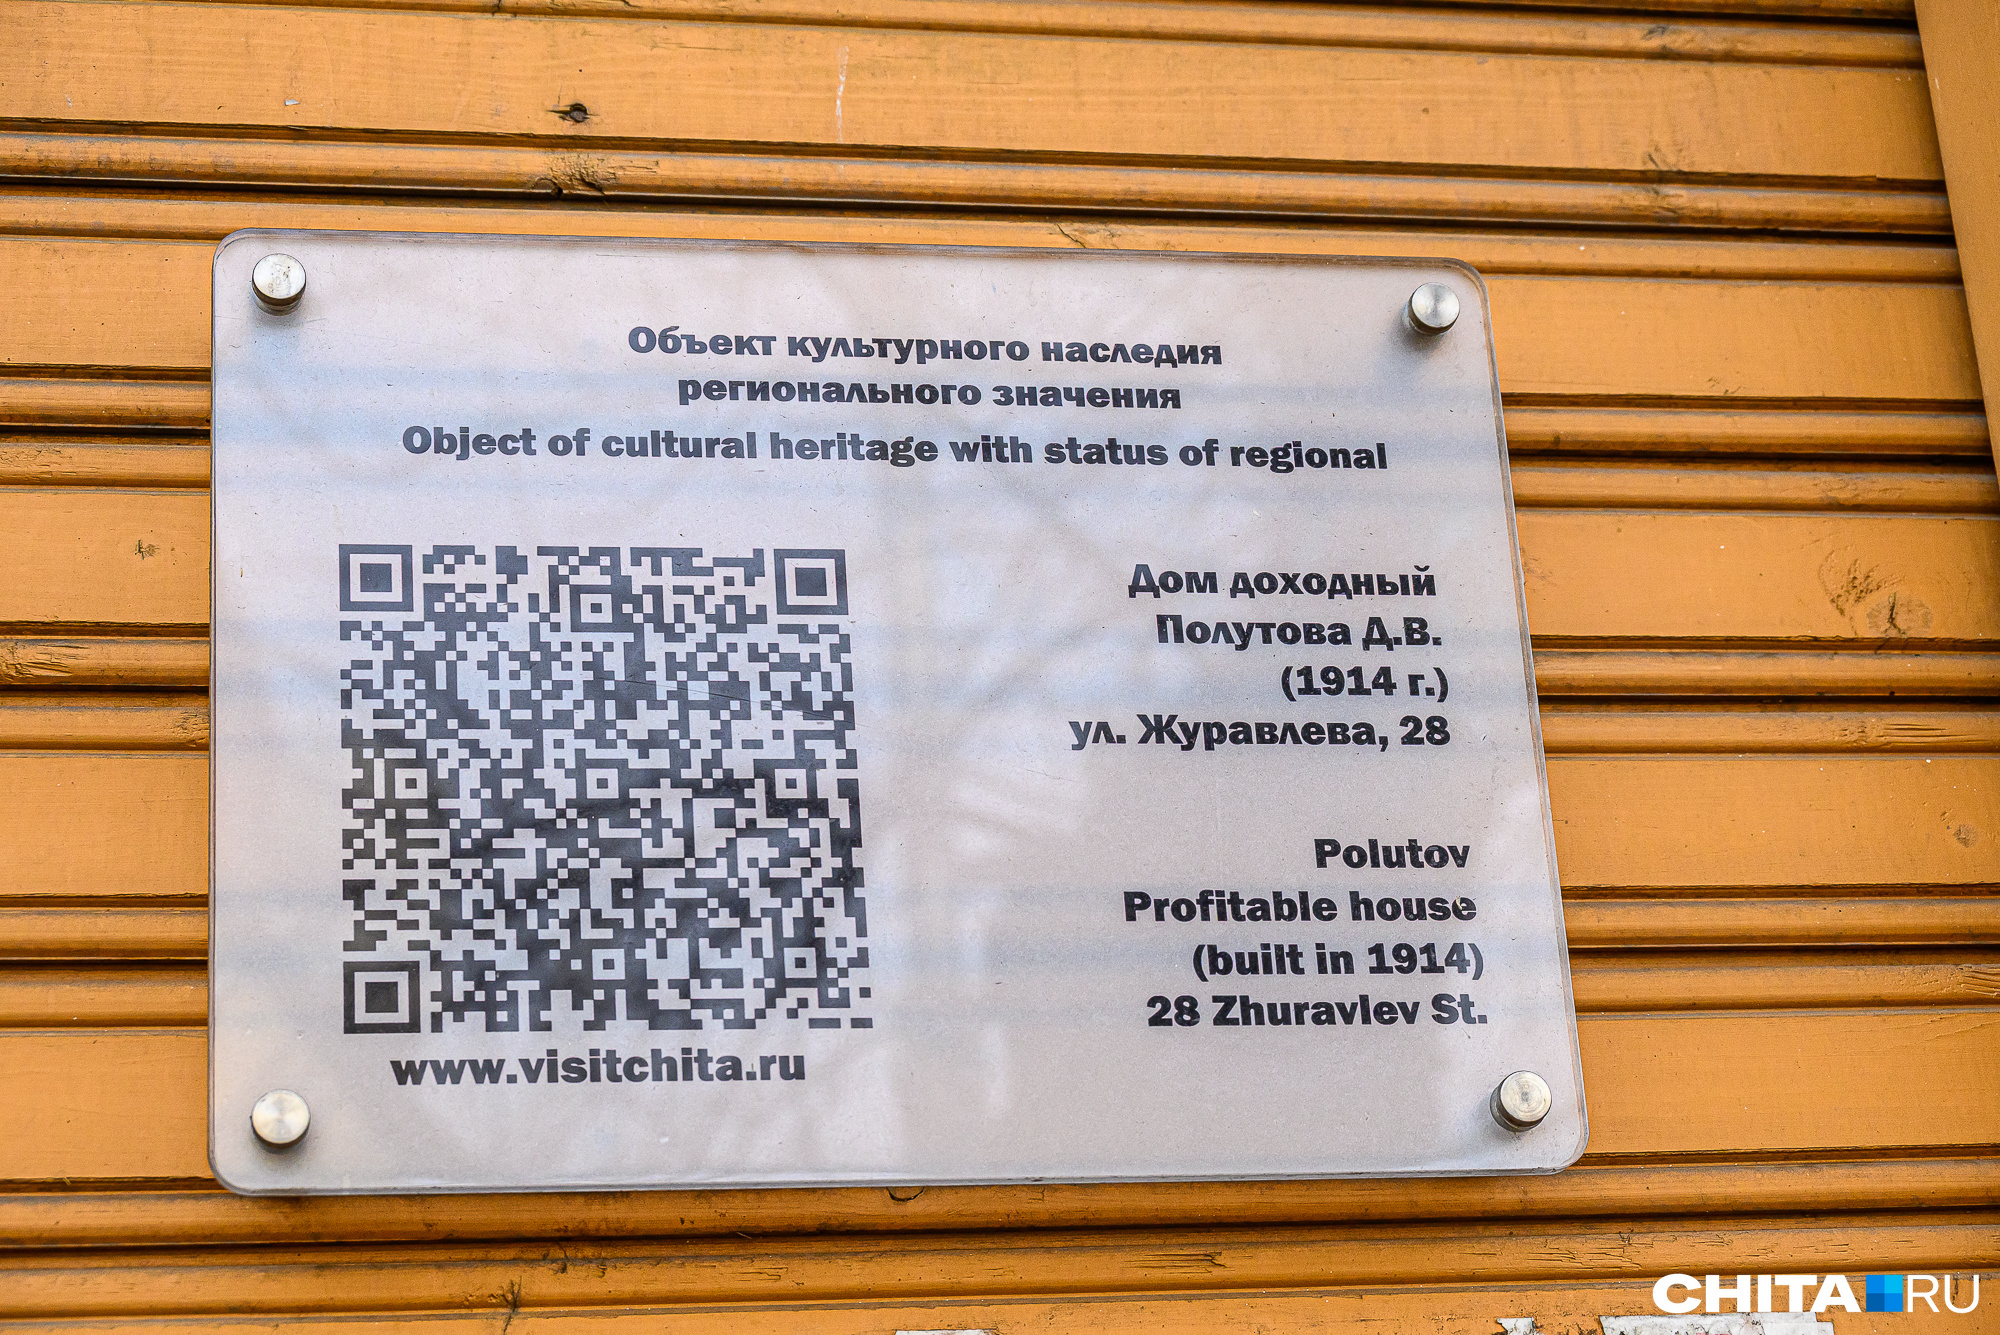 Что перед нами памятник регионального значения, можно понять по соответствующей табличке на стене дома с улицы Чайковского